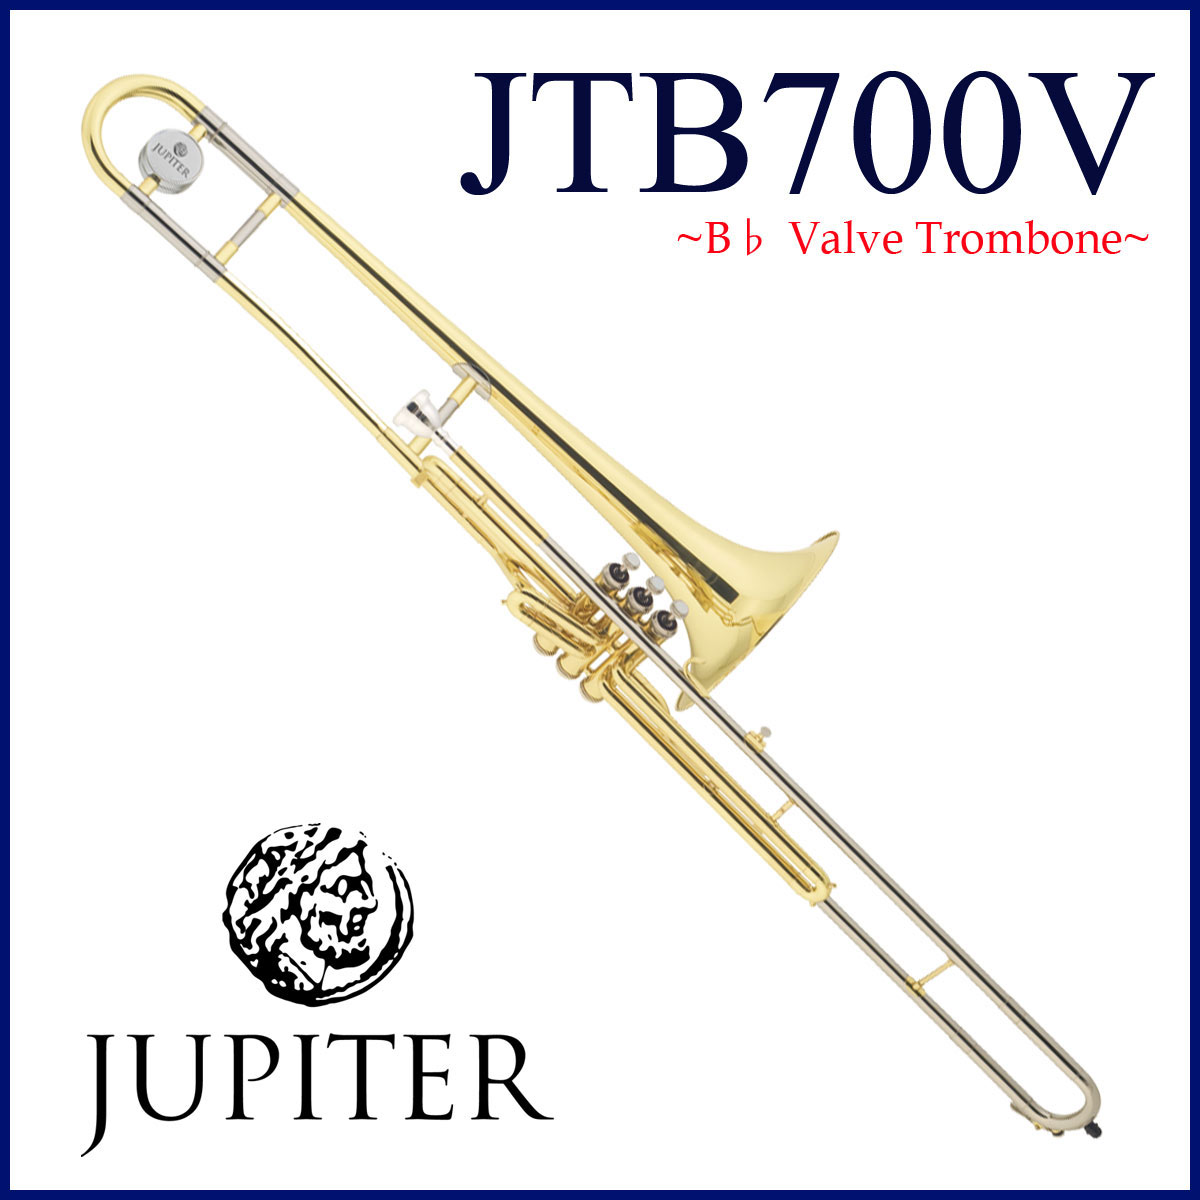 JTB-700V 〜高い技術が成せる特殊管〜 JUPITER/トロンボーンは、すべてのモデルにおいて設計を見直し、様々なジャンルに対応できる明るい音色と音抜けの良さに加えて、操作性も向上しています。特にトランペットのようなバルブシステムを搭載したJTB-700Vは、高い製造精度を誇る総合楽器メーカーだからこそ出来るモデルです。日本で使用される機会は少ないですが、海外ではよりポピュラーで、正確な音程と素早いパッセージが可能になります。トロンボーン独特の音色そのままに普段では難しいフレーズを可能にし、奏者のプレイスタイルを大きく広げます。 ■仕様 ・調子：B♭ ・素材： ベル/イエローブラス メインスライド外管/ニッケルシルバー ・ボアサイズ：12,24mm（細管） ・203mm（8インチ） ・クリアラッカー ・付属キィ：スライドU字管ウォーターキィ ※アジャスタブルサムフック付 ■付属品 ・ケース ・マウスピース ・スライドオイル ・クロス ・メーカー1年保証 ■保証:12ヶ月 UD20170612